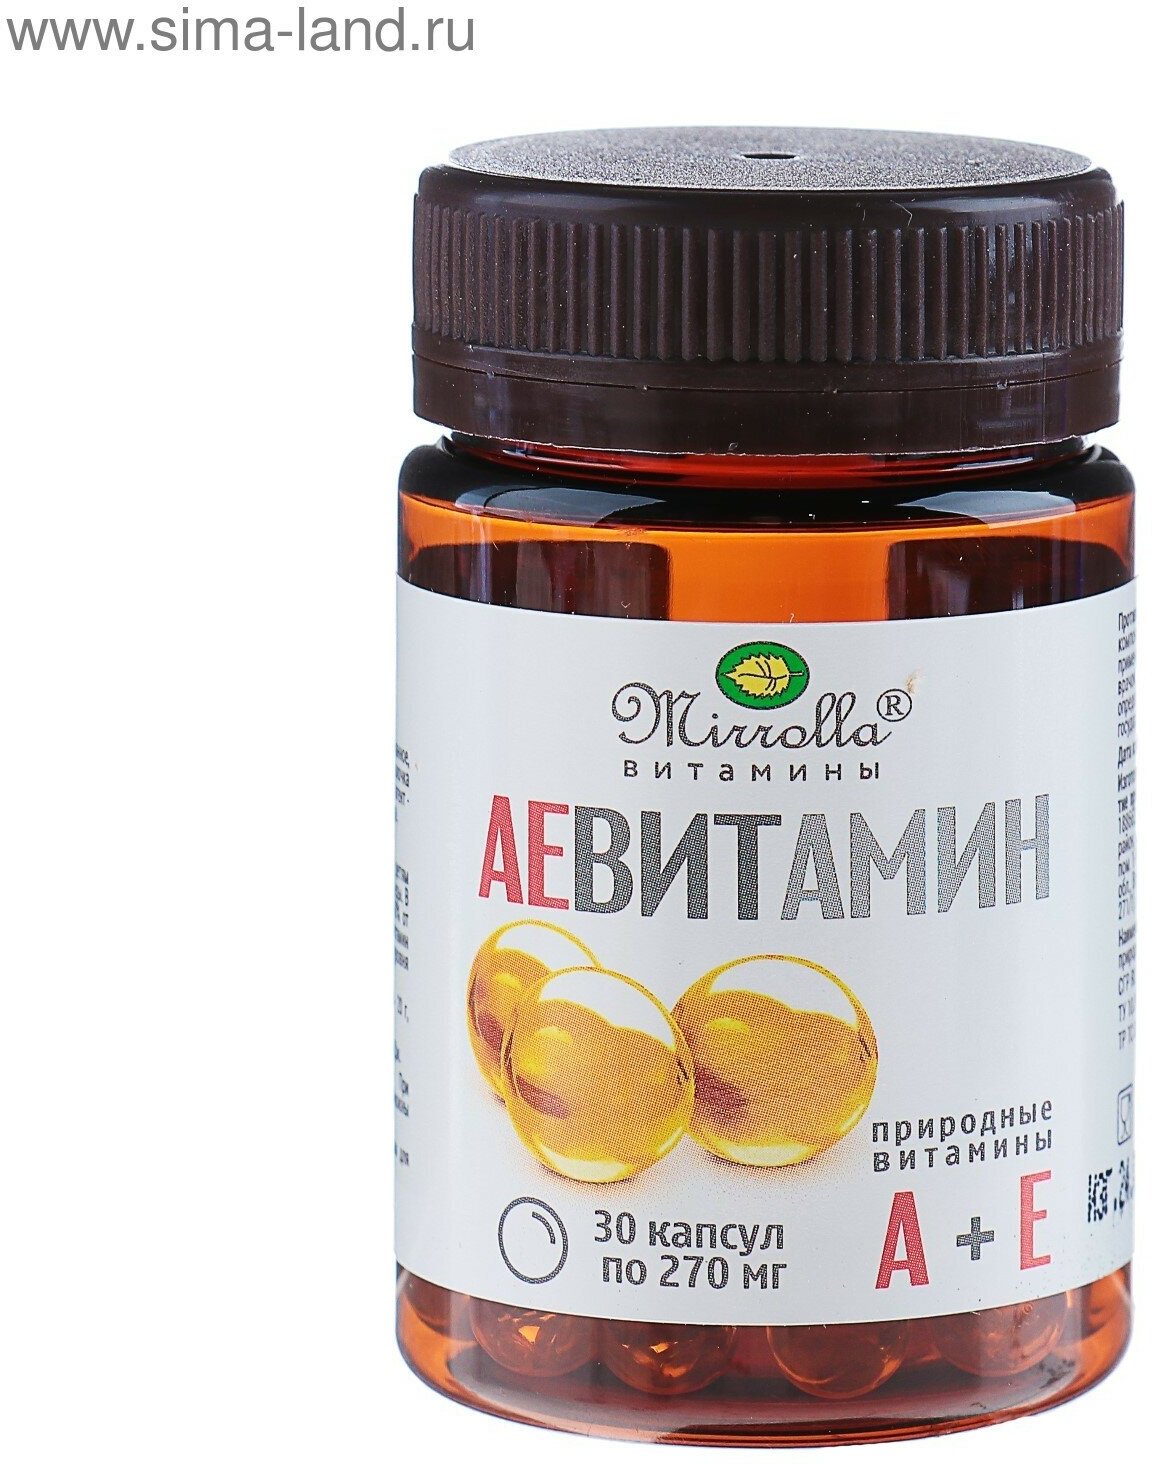 Пищевая добавка «АЕ ВИТамин» с природными витаминами, 30 капсул